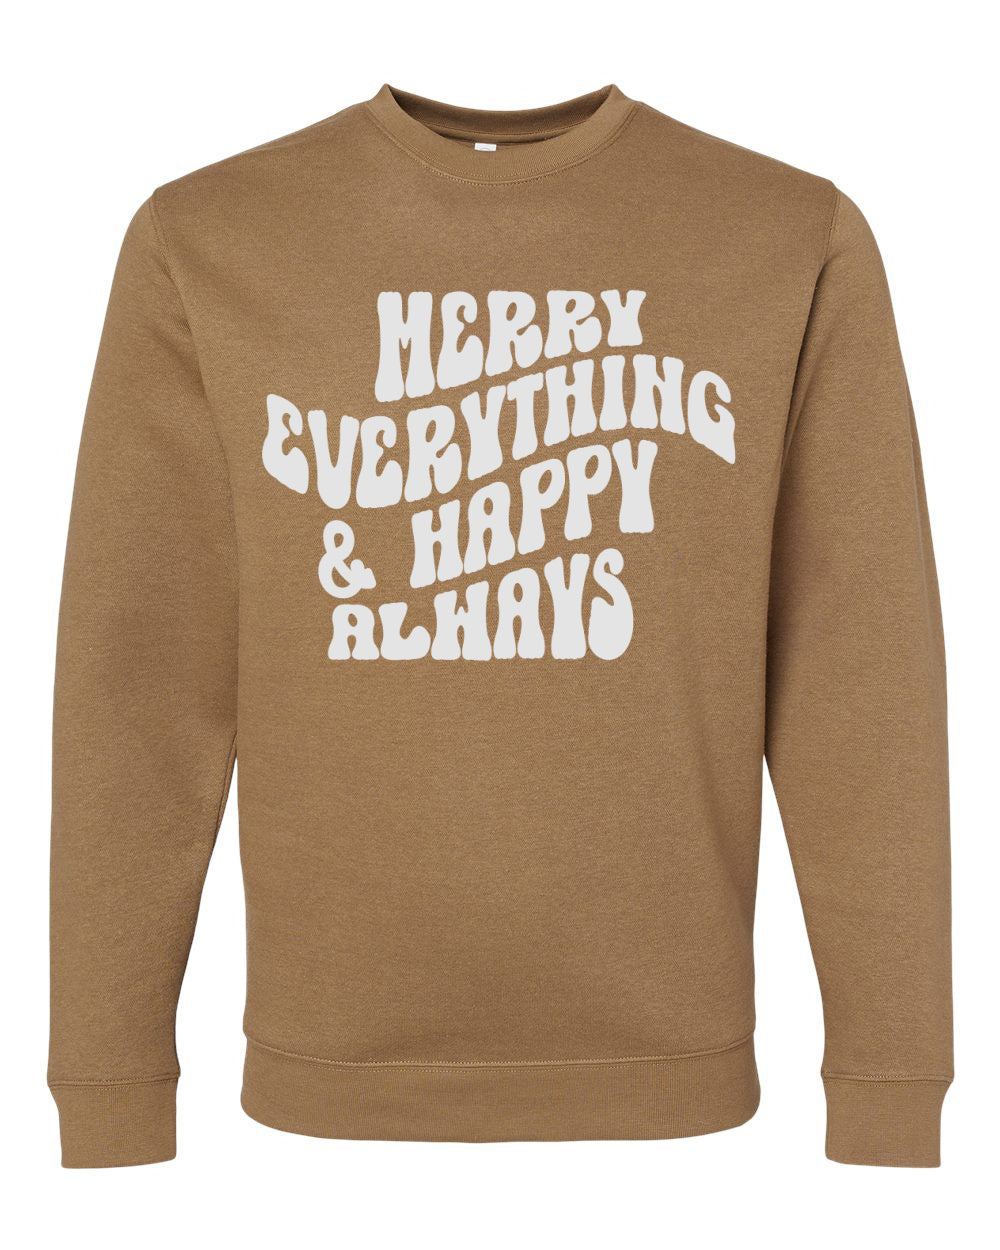 Merry Everything and Happy Always Sweatshirt -   Adult Sizes - Christmas Sweatshirt